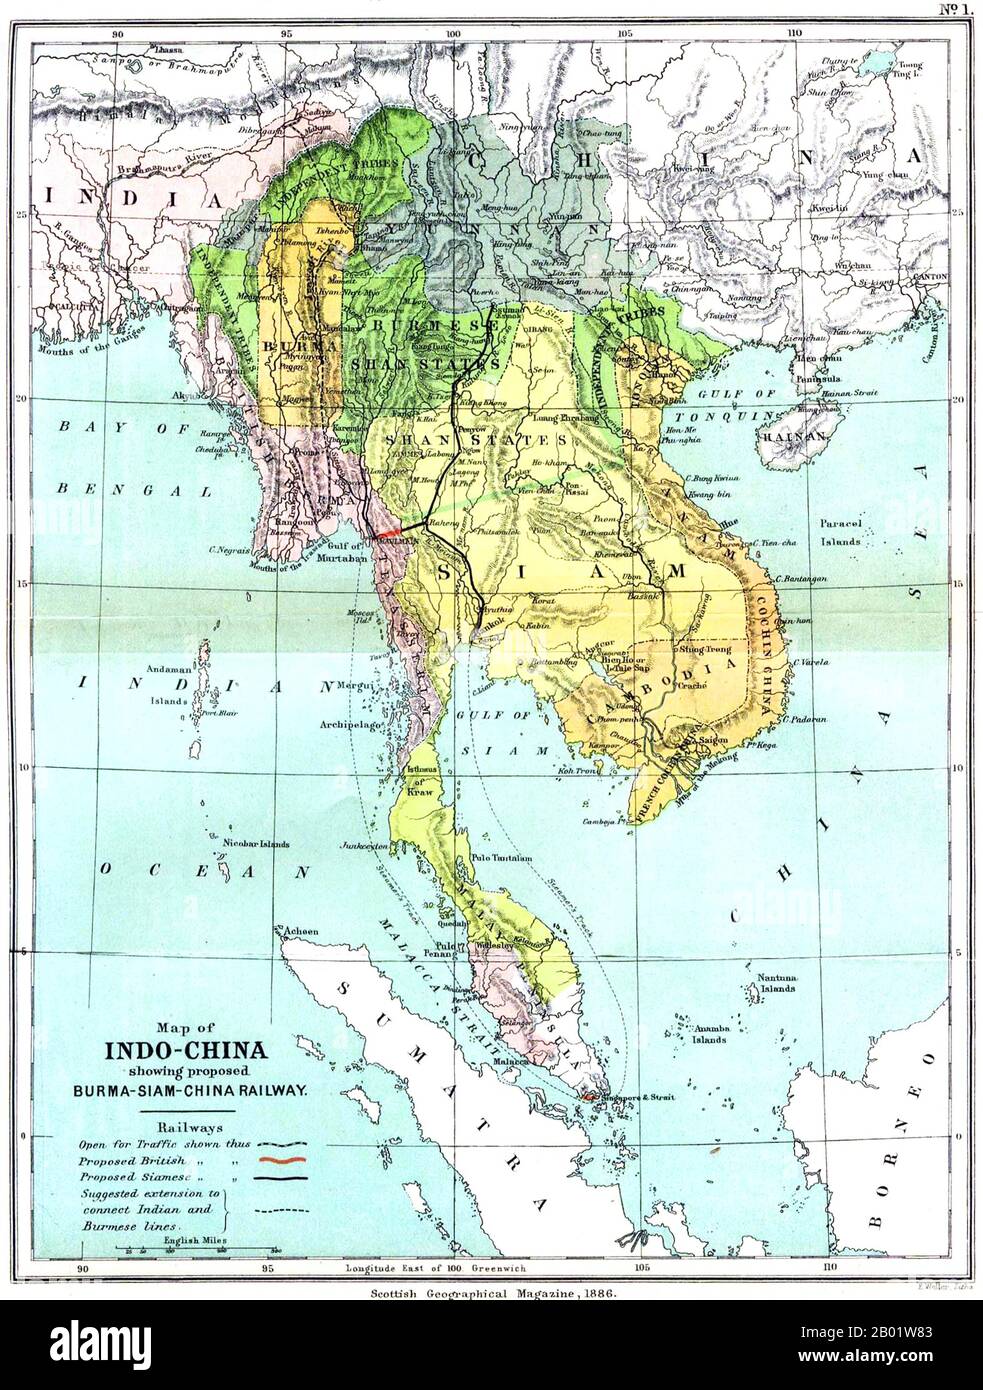 Sud-est asiatico: Una mappa del Regno Unito (Scottish Geographical Magazine) della grande Indocina e della penisola malese, 1886. Una mappa dettagliata e straordinariamente accurata di Birmania, Siam, Vietnam, Cambogia e Malesia risalente al 1886 e che mostra il rettangolo della Birmania indipendente intorno a Mandalay - che stava perdendo la sua indipendenza dalla Gran Bretagna nel 1885-1886 quando la mappa fu pubblicata. Gli Stati Shan birmani sono mostrati sotto l'influenza birmana (che presto sarà sostituita da quella della Gran Bretagna). Foto Stock